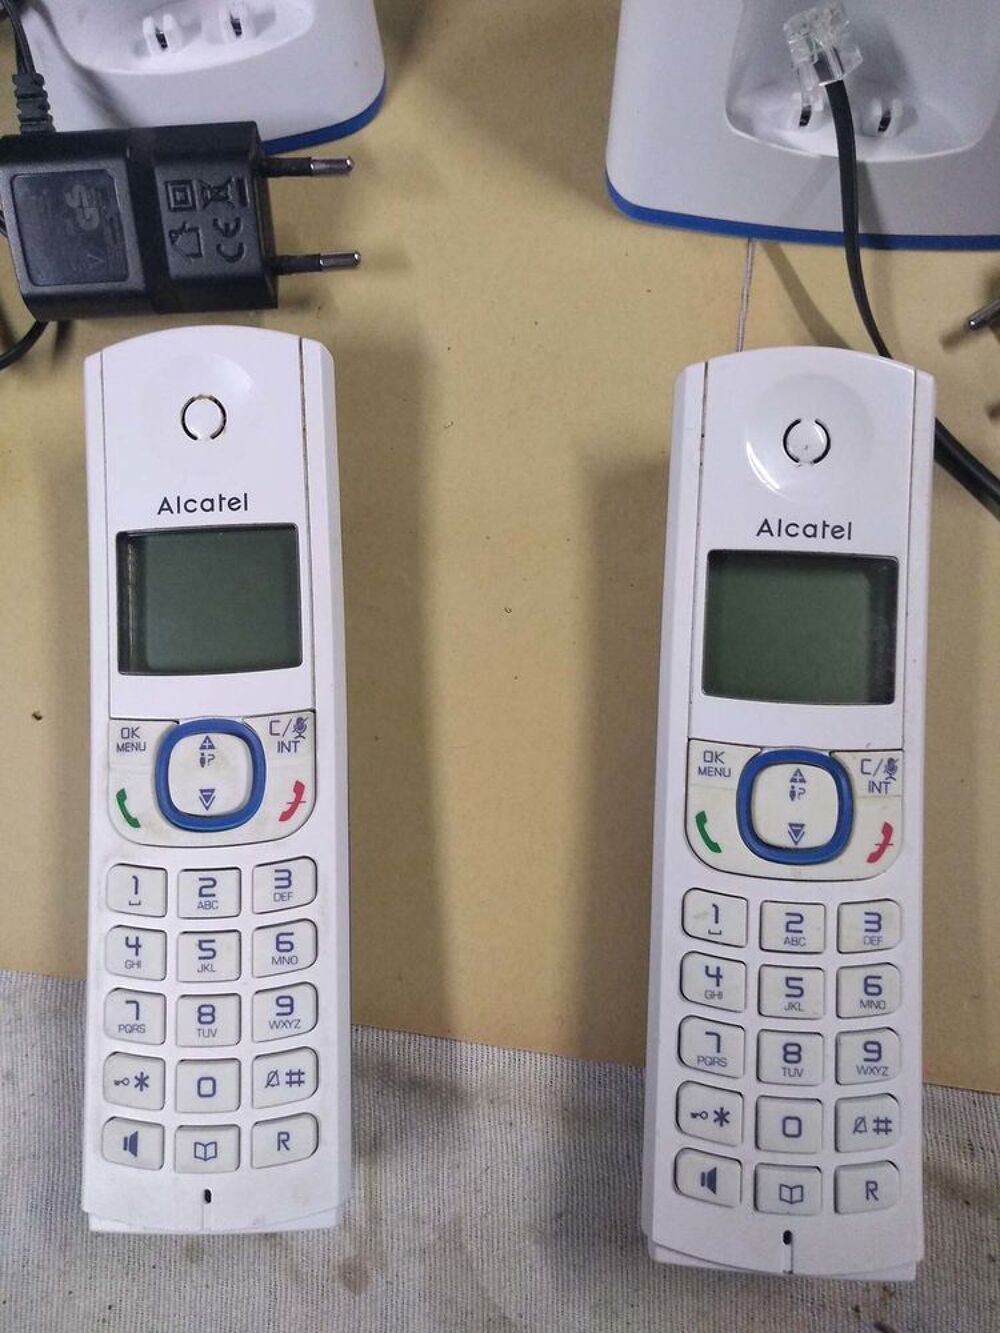 T&eacute;l&eacute;phone sans Fil Alcatel F 530 DUO Blanc/bleu
Tlphones et tablettes